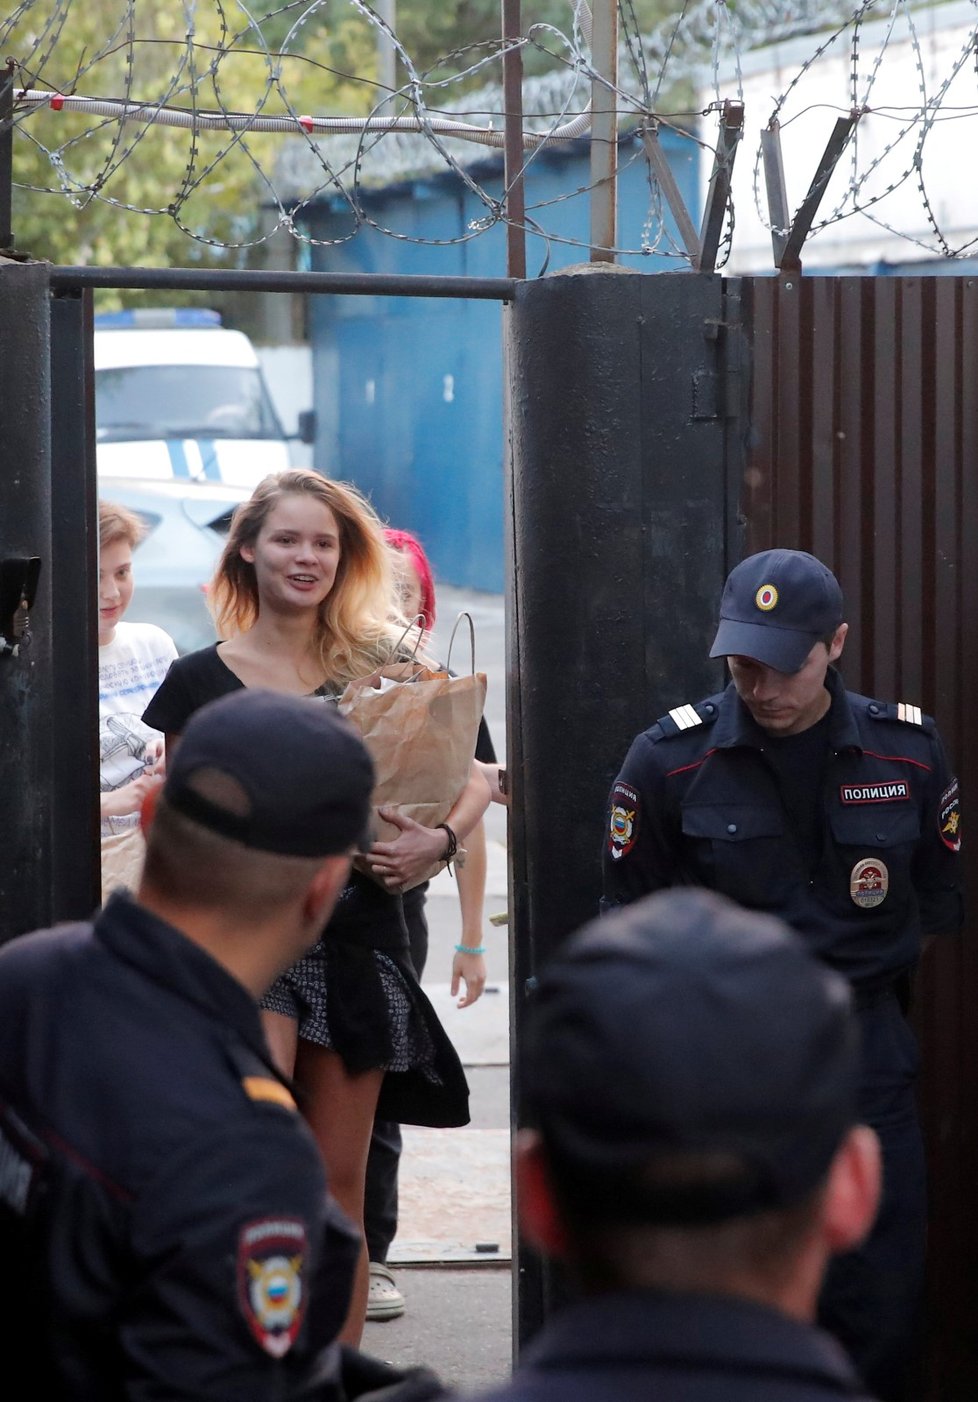 Členové ruské protestní skupiny Pussy Riot byli v pondělí opět zadrženi, když odcházeli z vězení. Policie skupinu obvinila z organizování nepovoleného shromáždění.